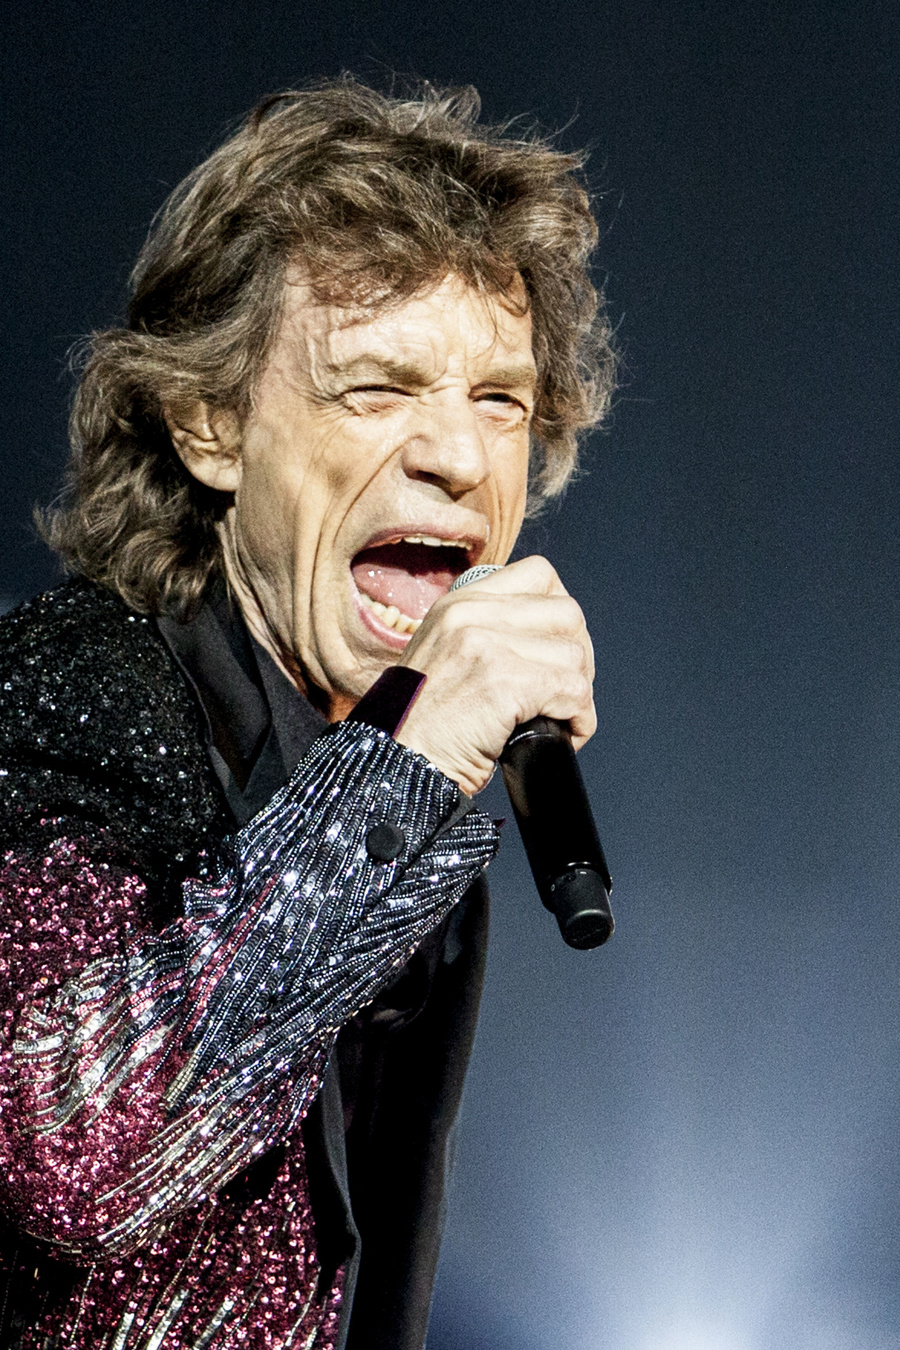 Spevák Mick Jagger